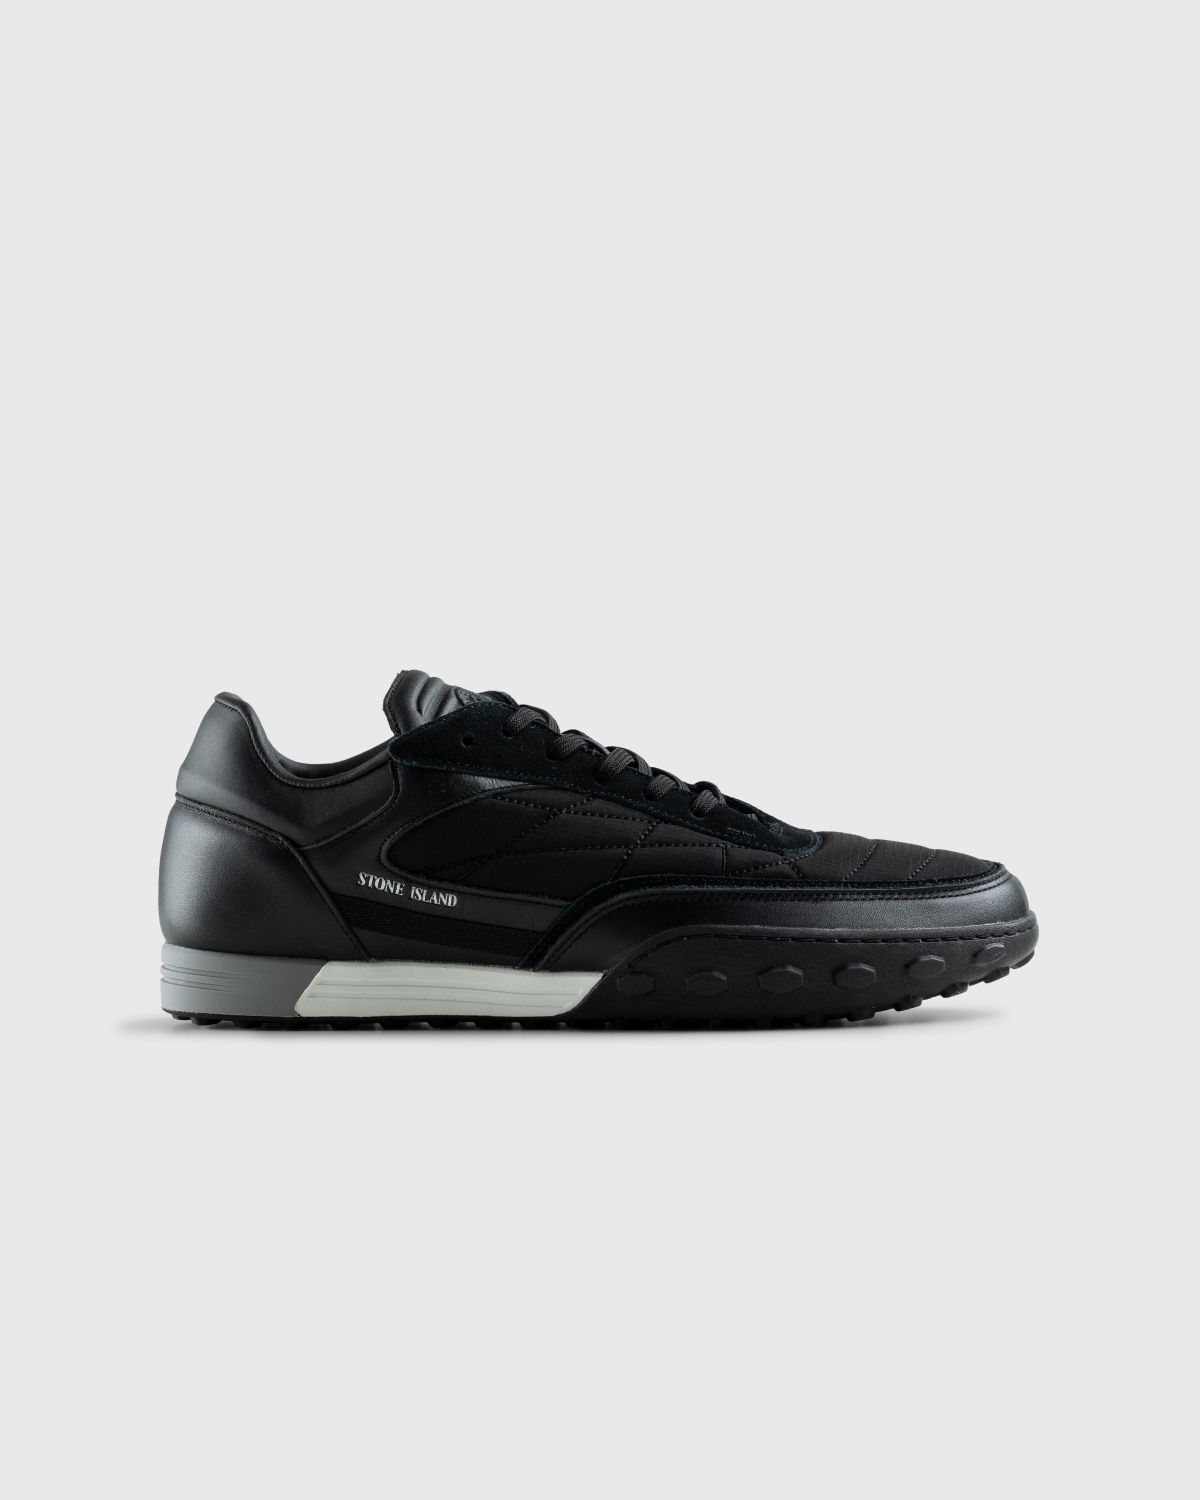 Stone Island – Football Sneaker Black - Low Top Sneakers - Black - Image 1